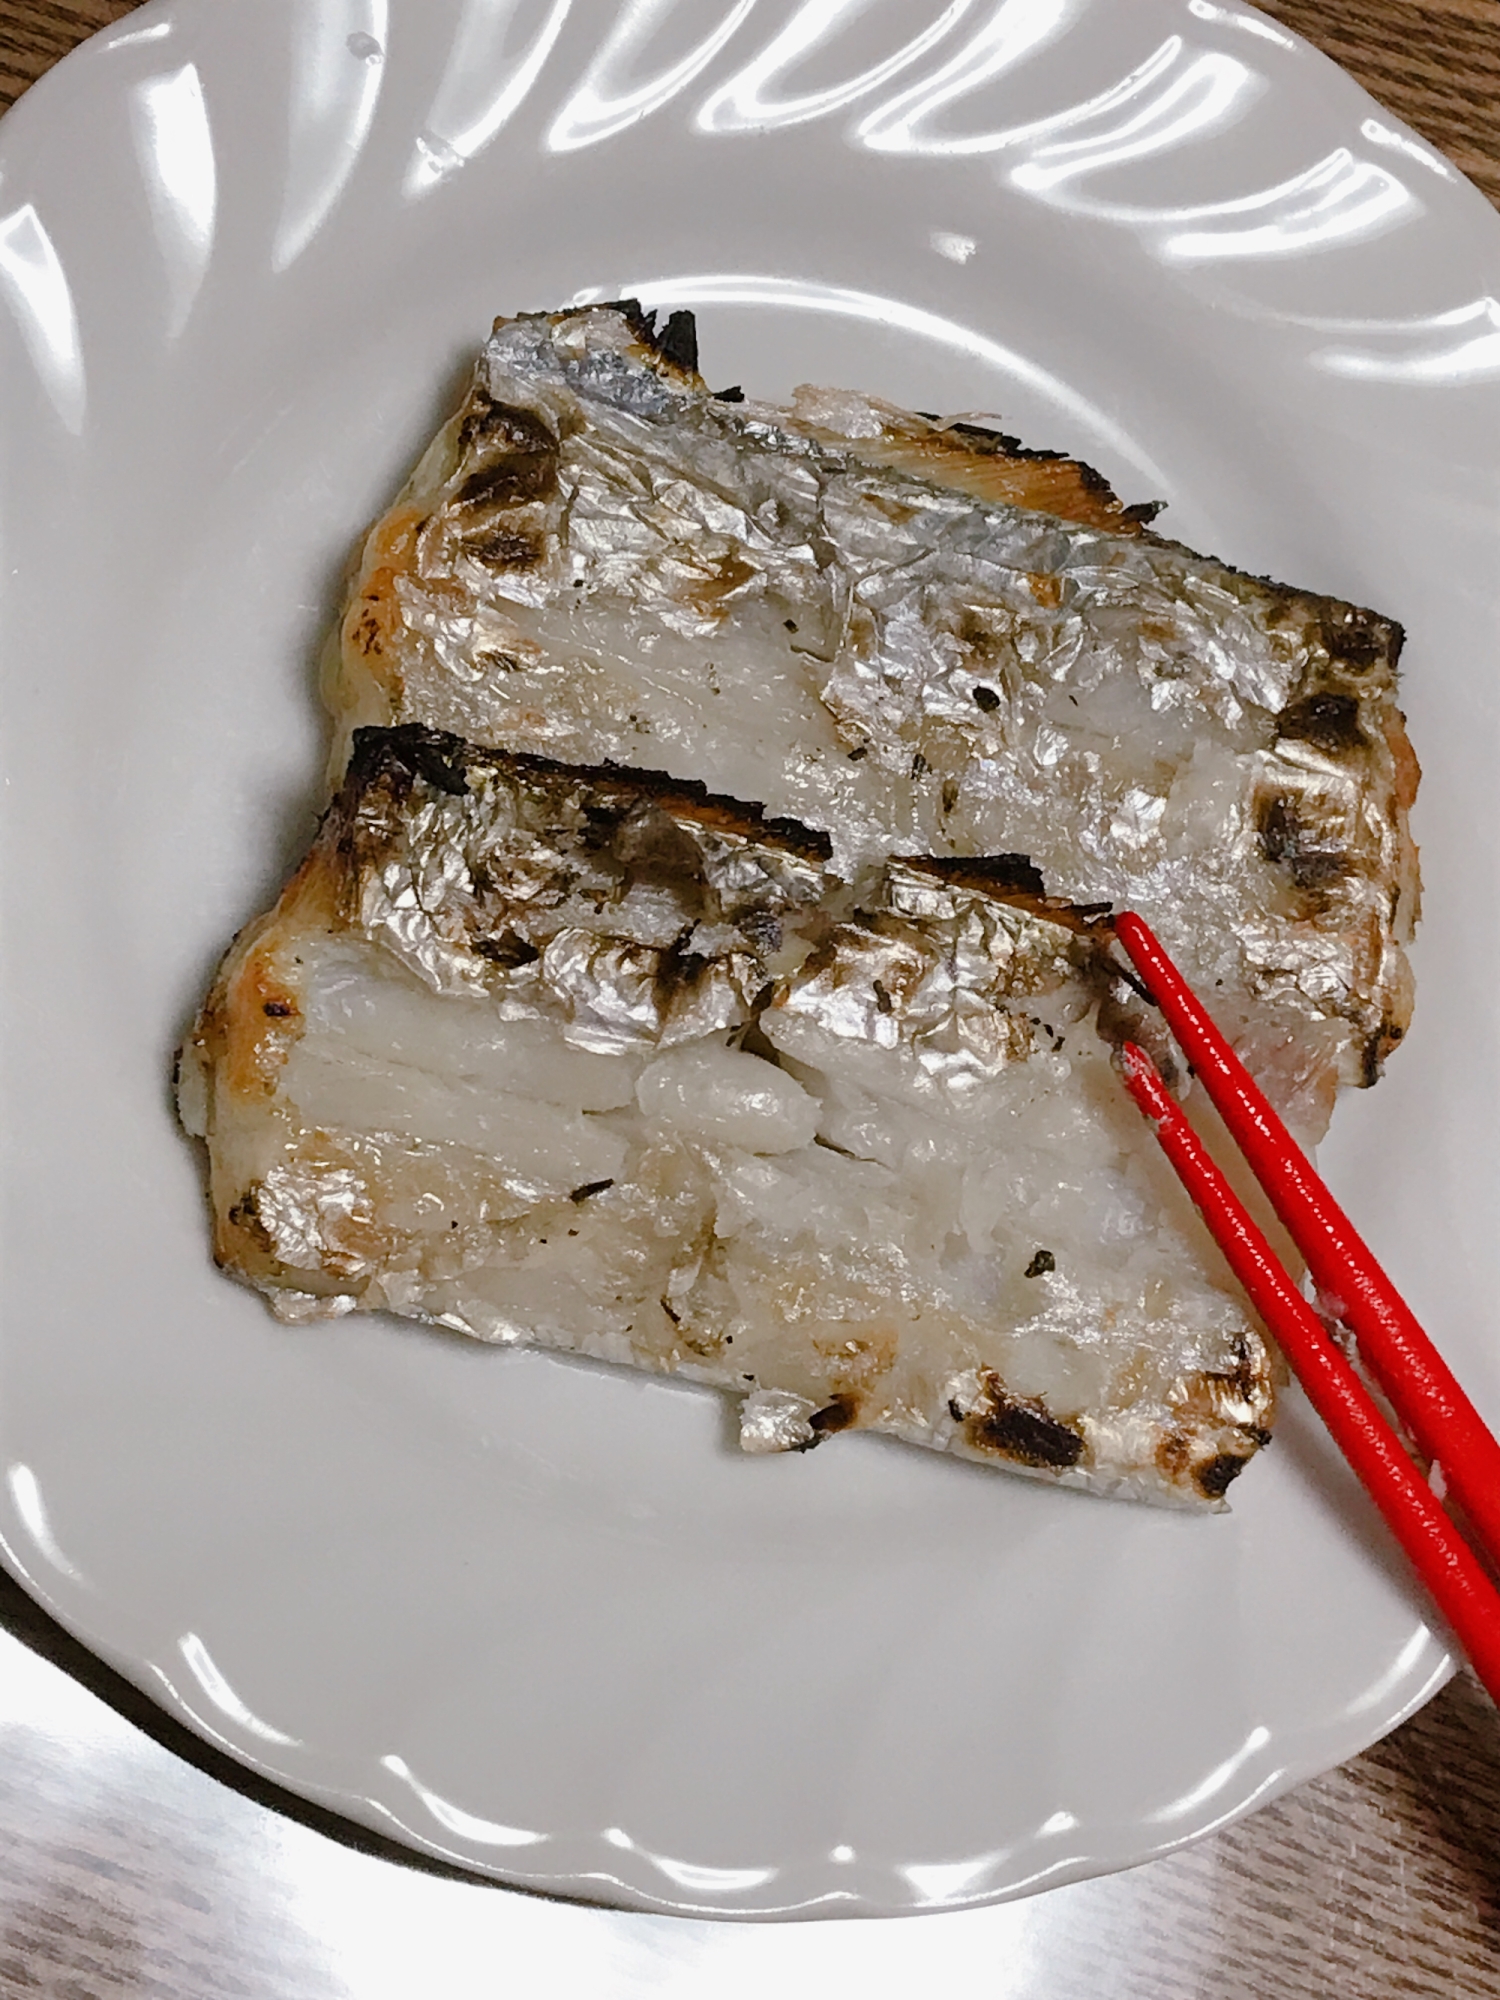 ふっくら美味しい太刀魚の焼き方 レシピ 作り方 By Rママ 楽天レシピ